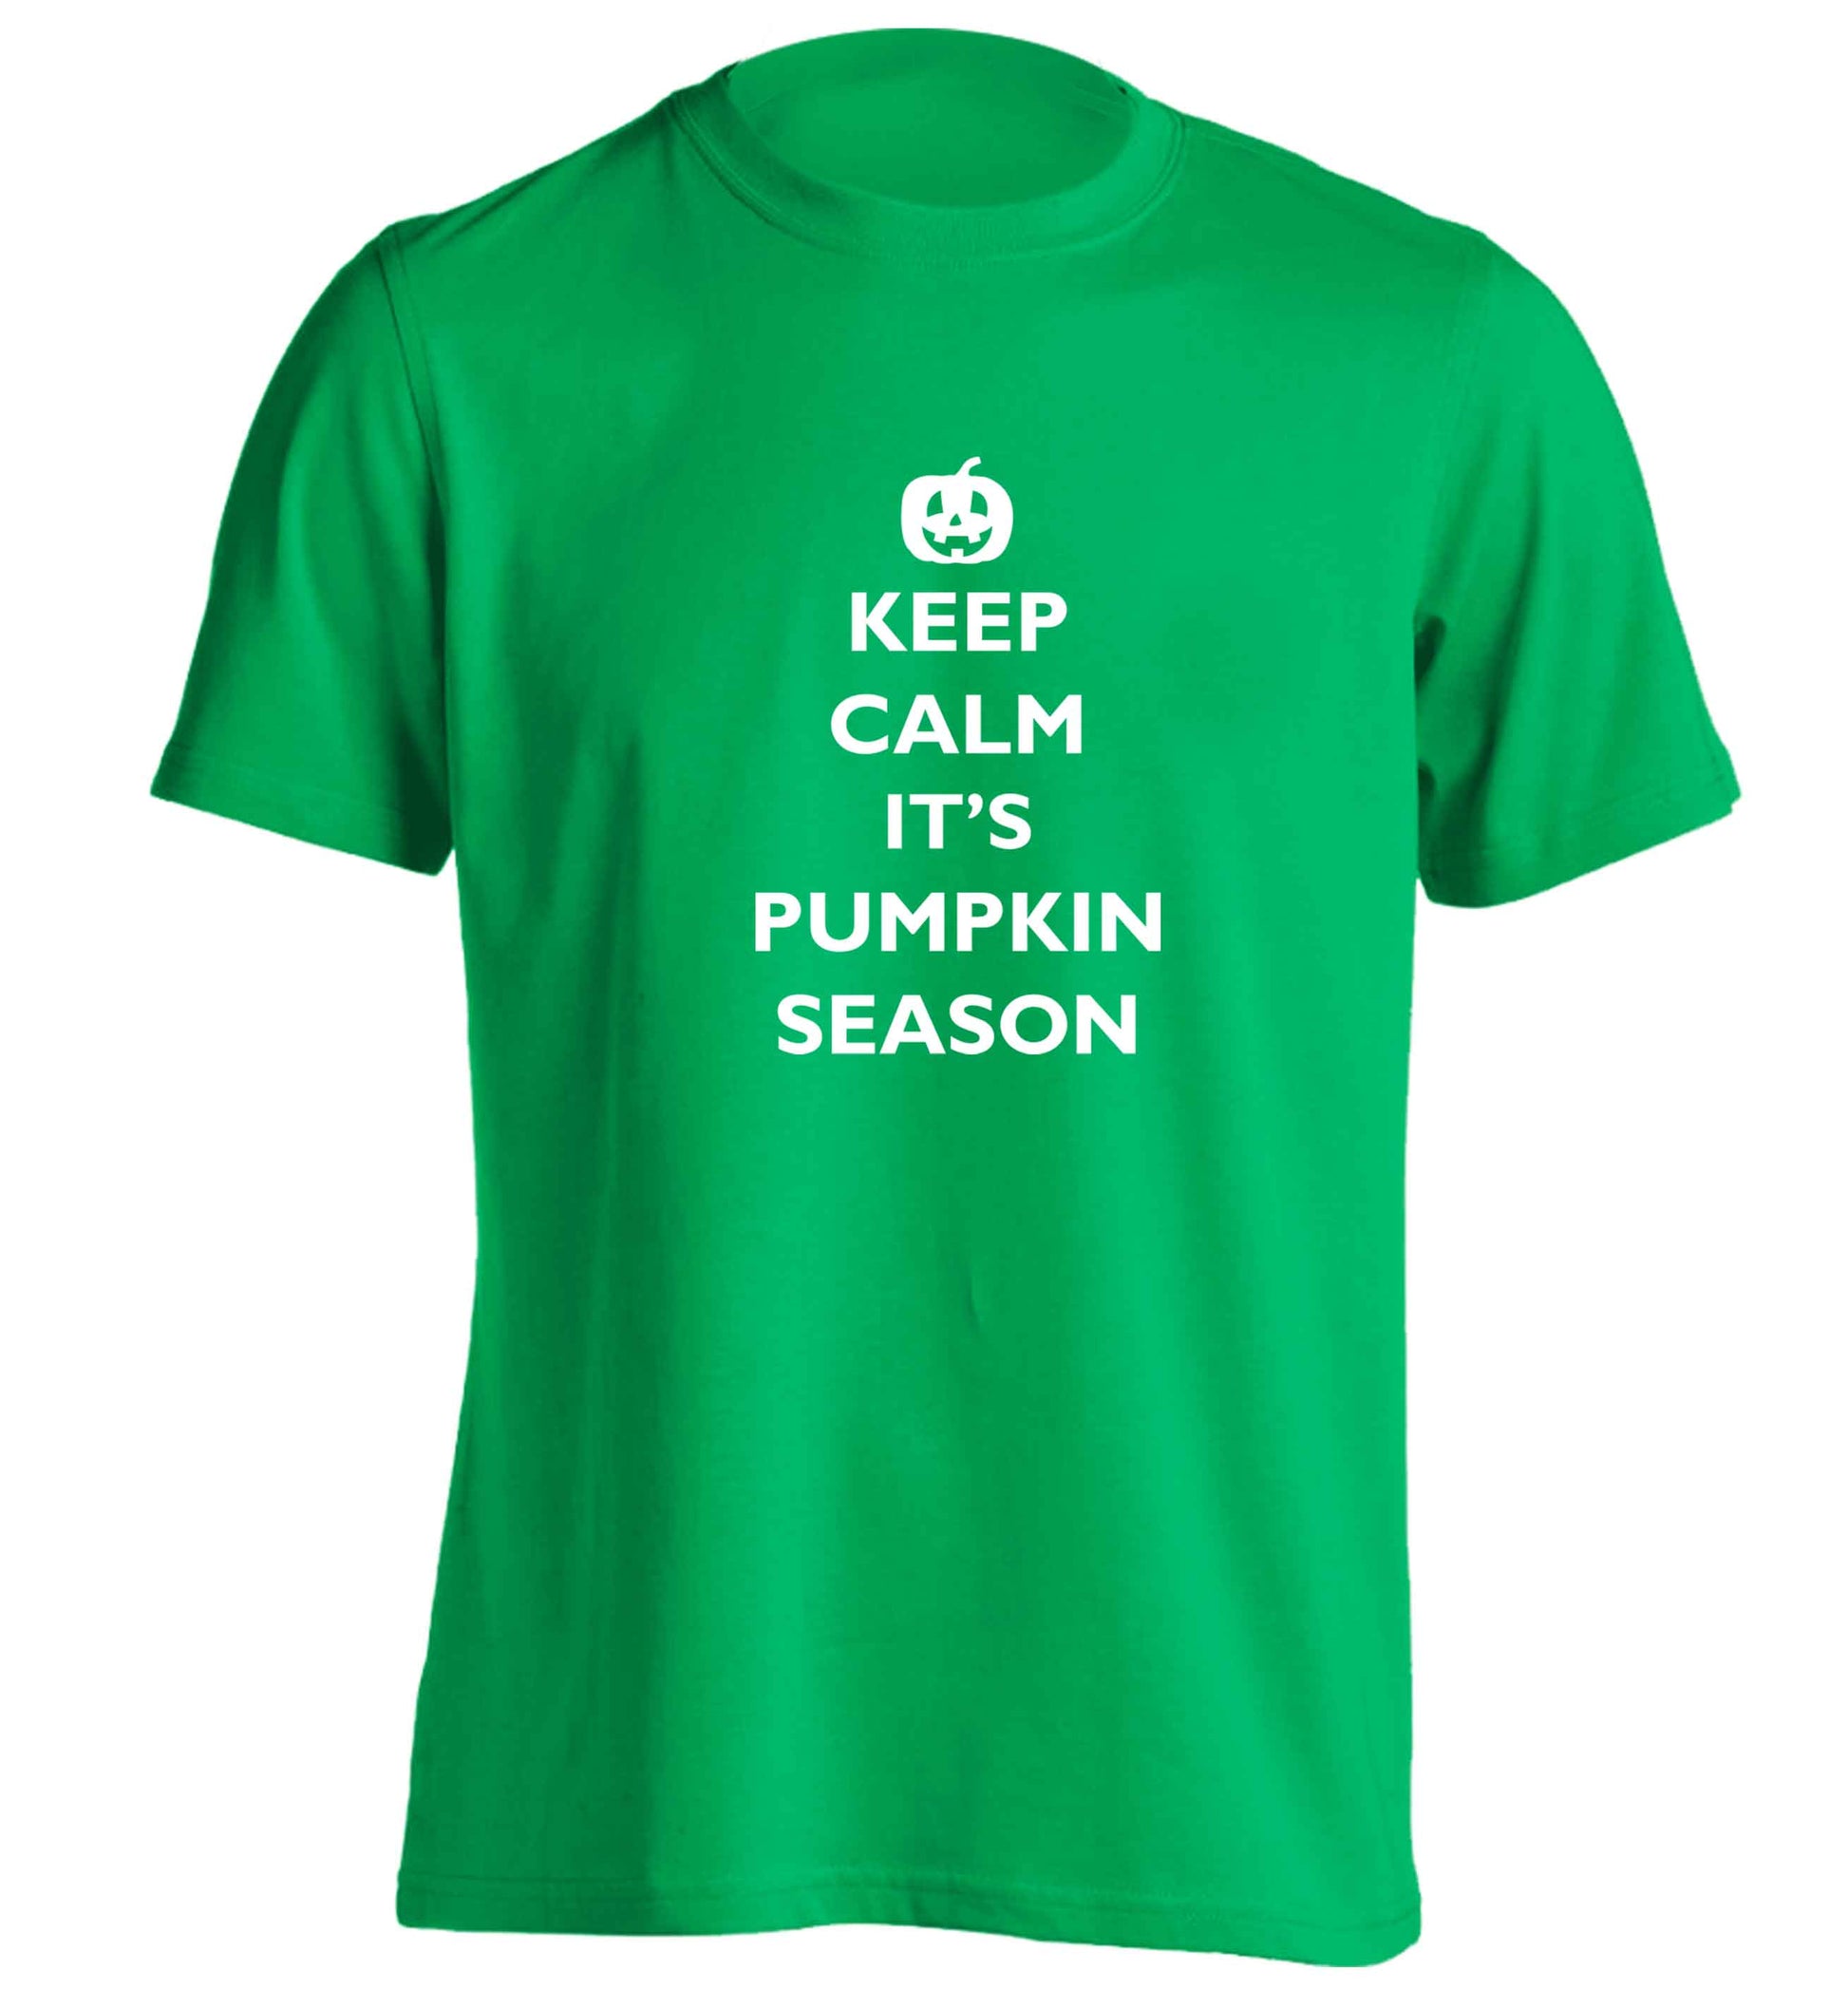 Calm Pumpkin Season adults unisex green Tshirt 2XL